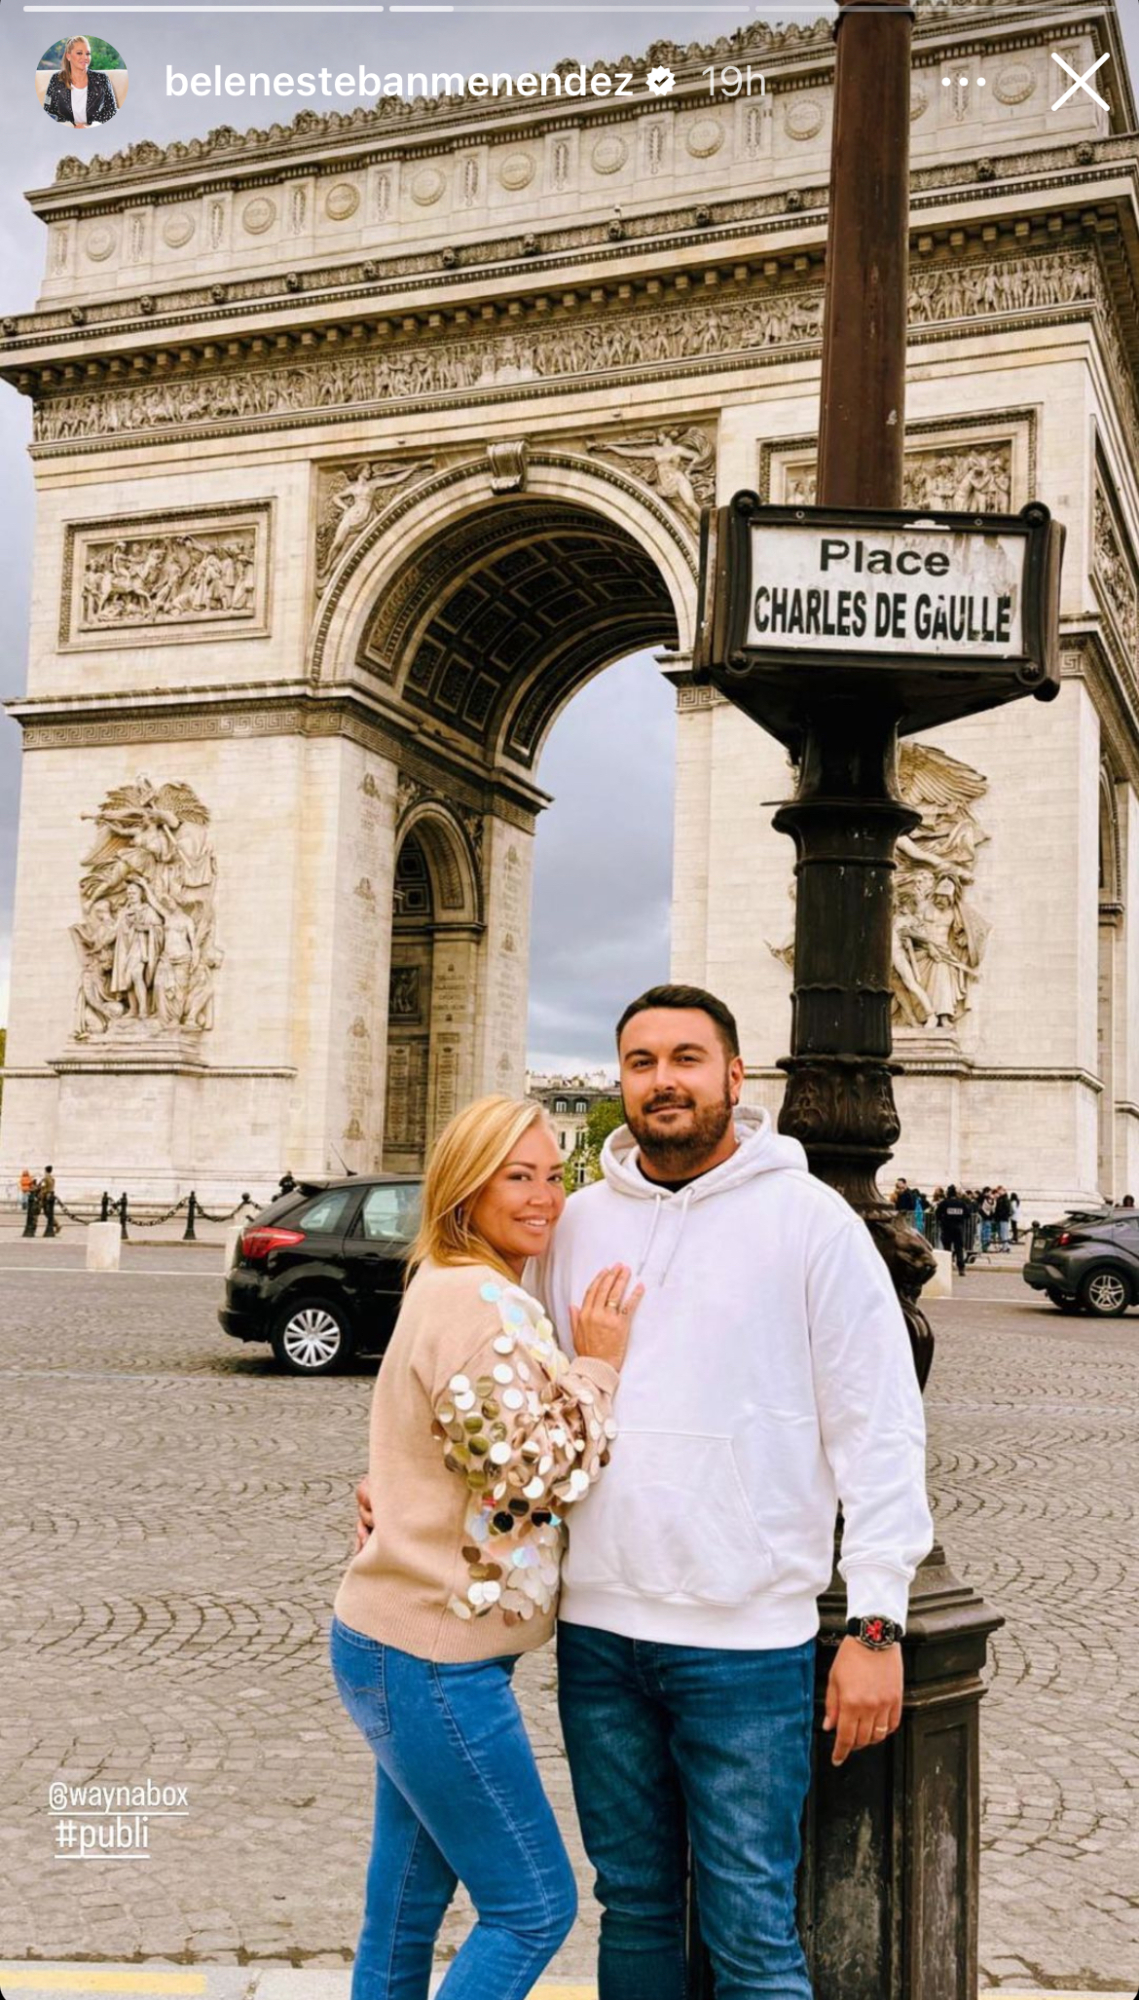 Belén Esteban y su marido posando en París para redes sociales